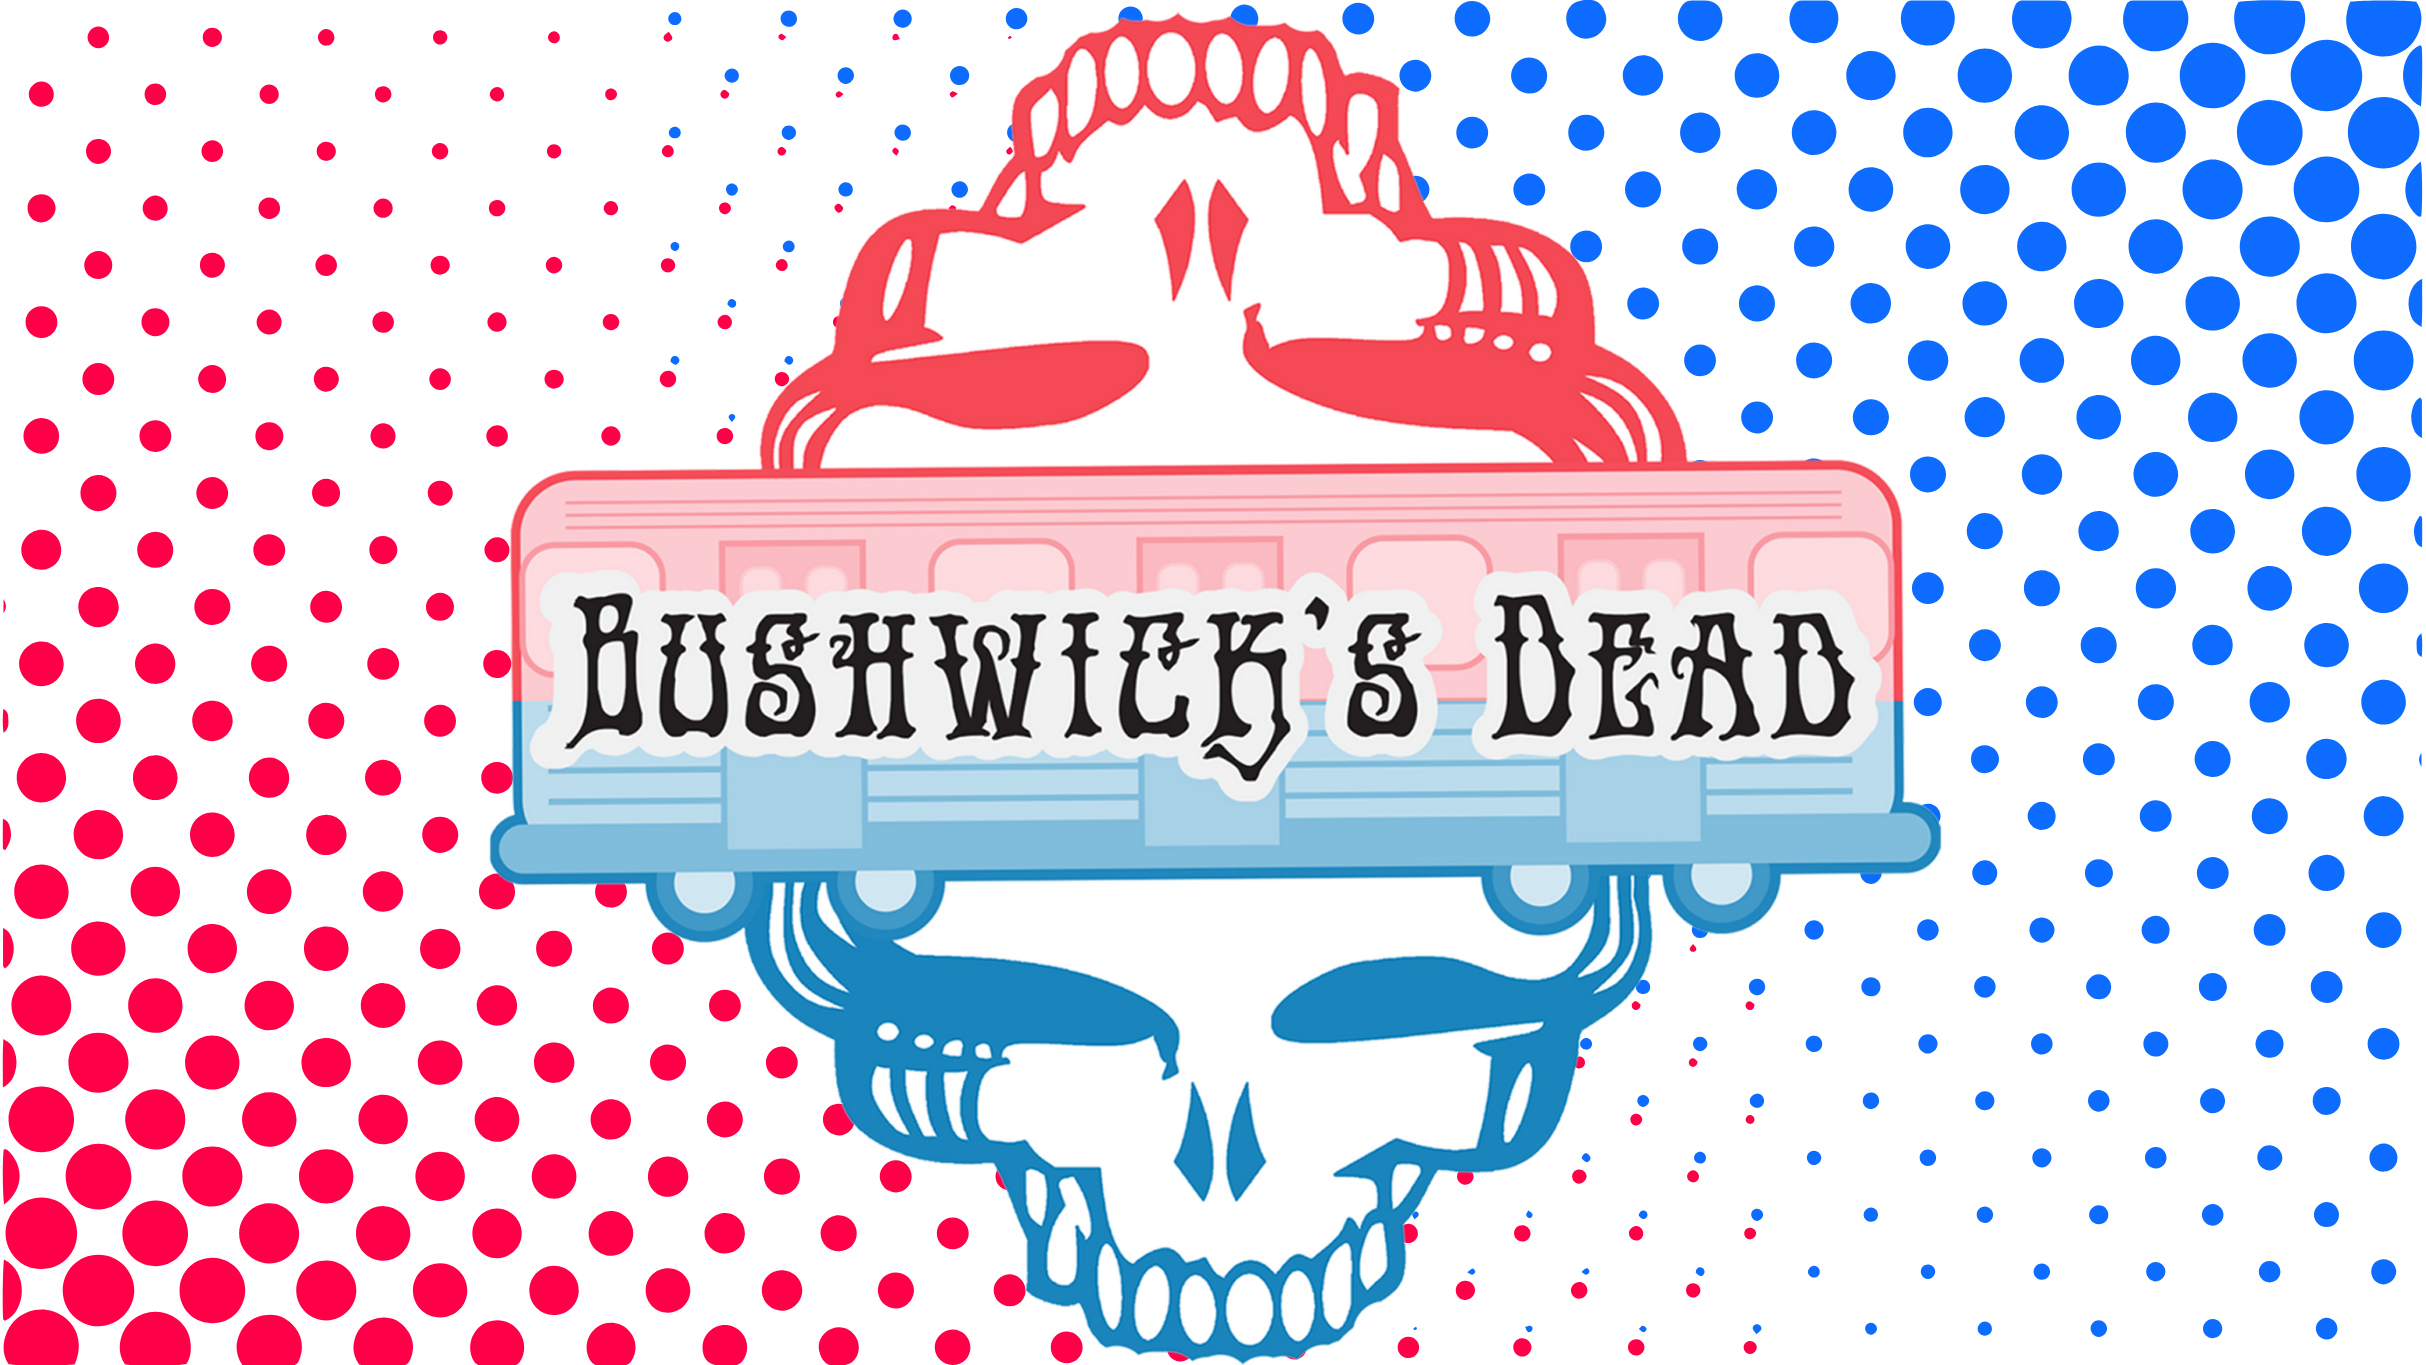 Bushwick's Dead